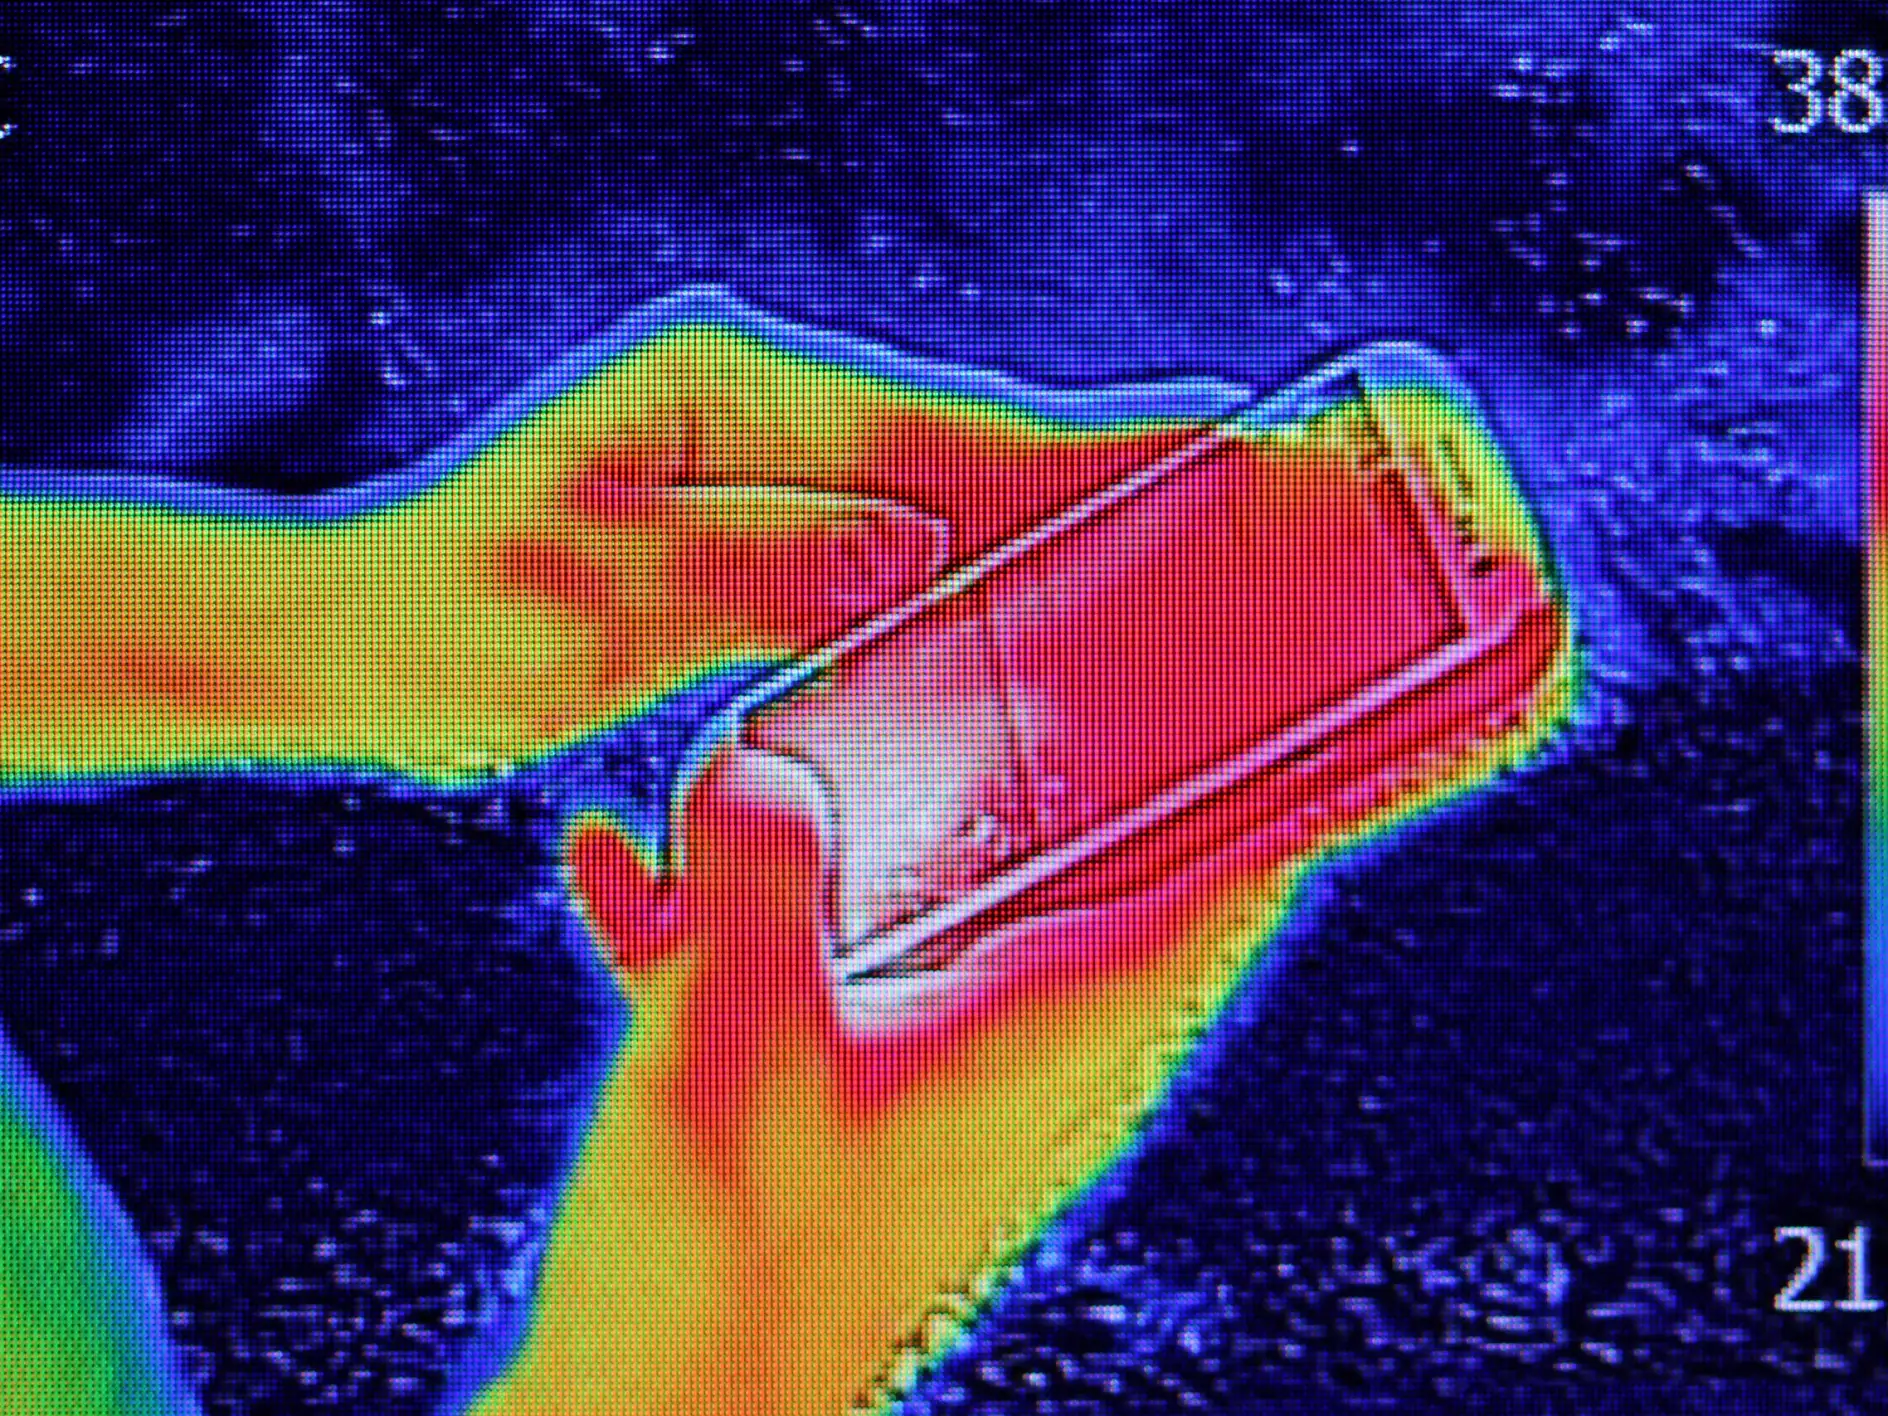 Obraz z termografii w podczerwieni pokazujący emisję ciepła, gdy młoda dziewczyna korzystała ze smartfona lub telefonu komórkowego